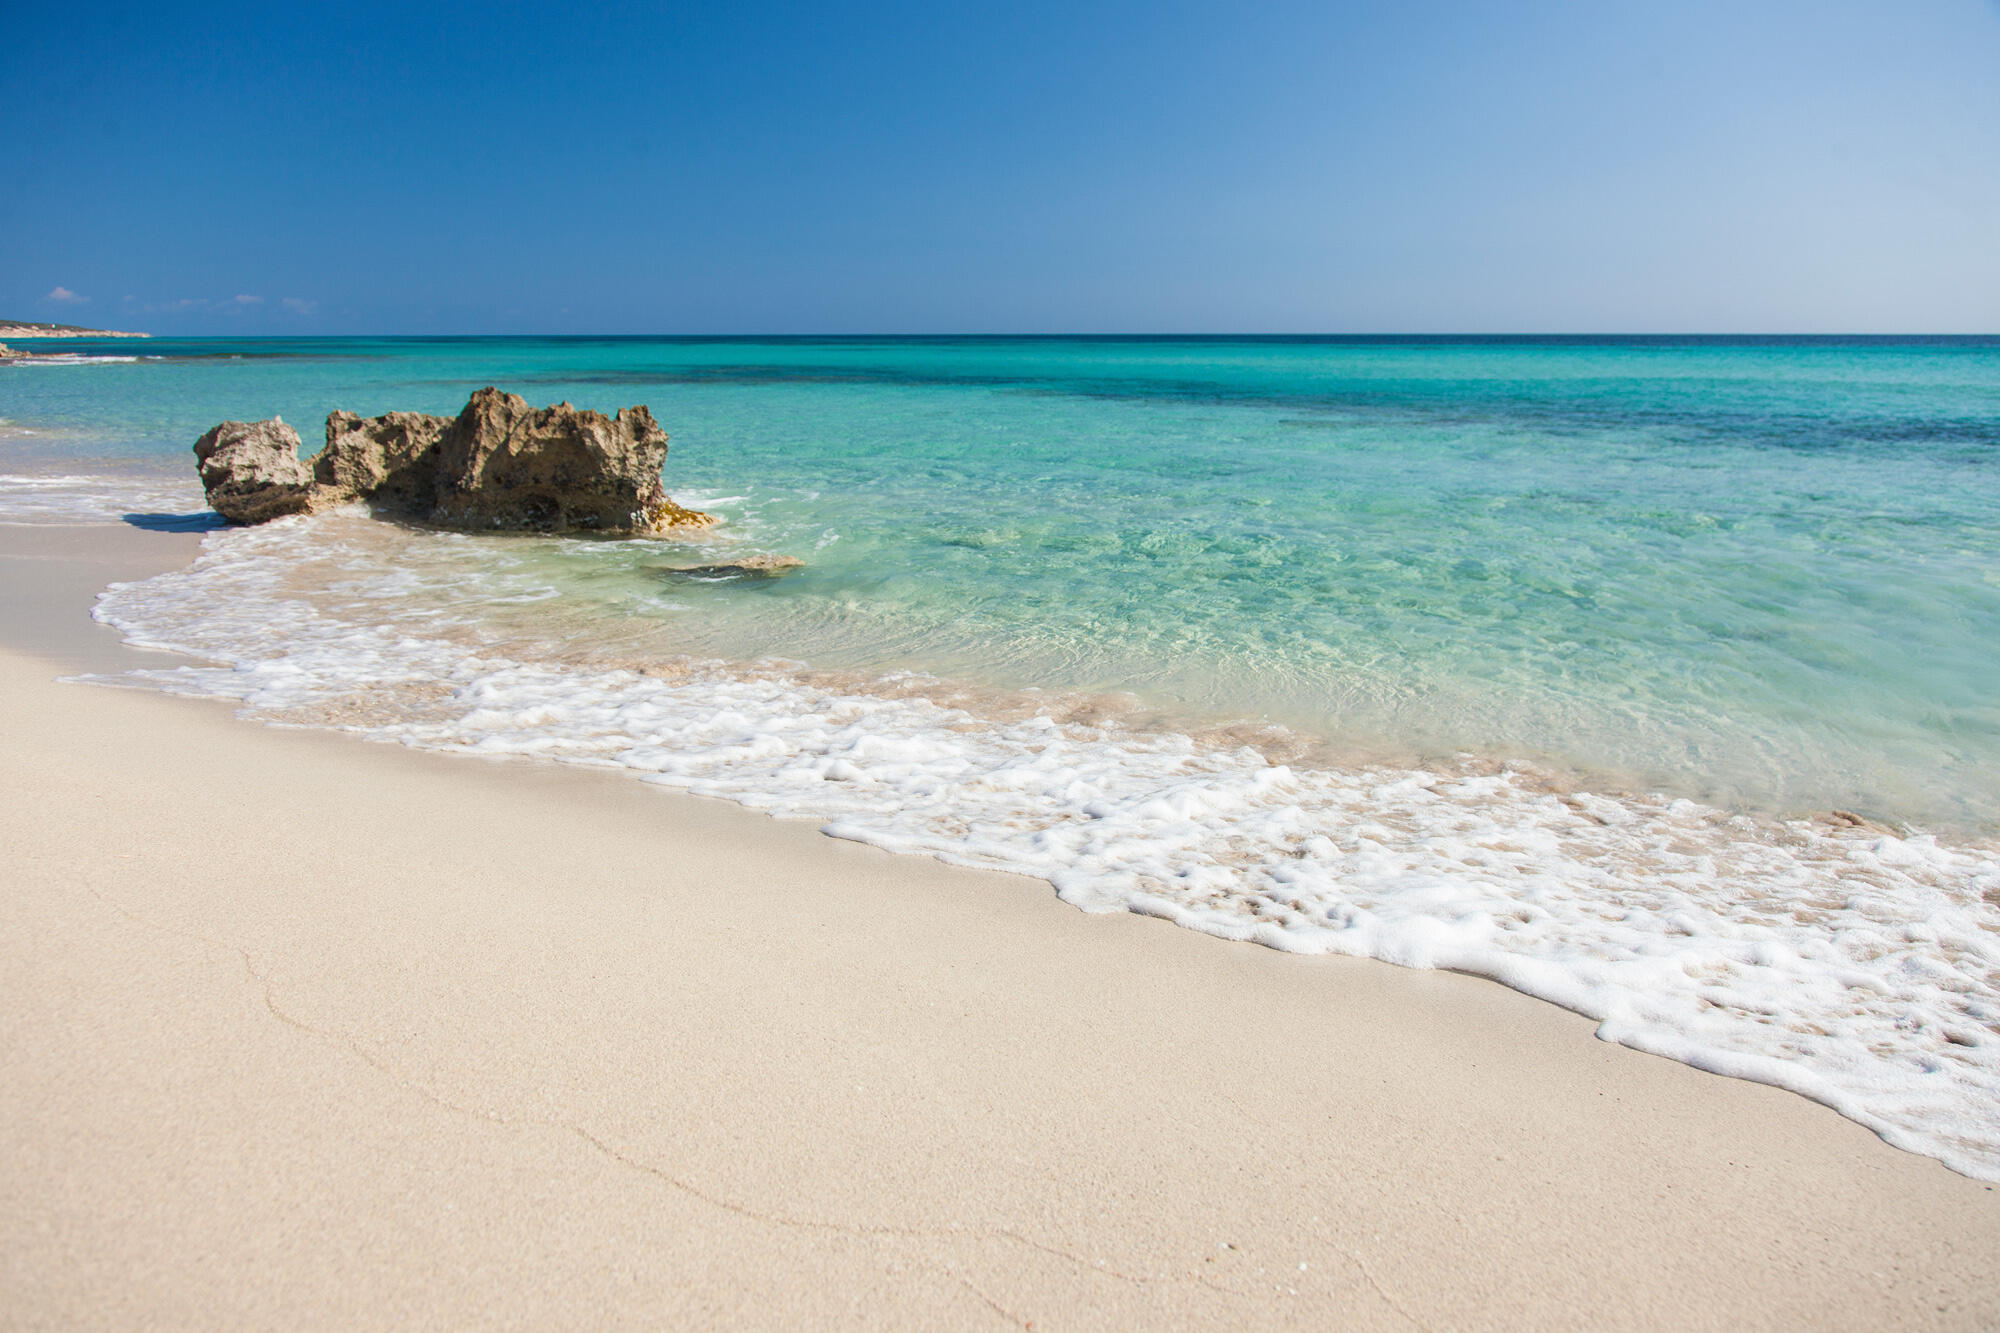 Karibikfeeling auf einem der schönsten Strände auf Formentera: Migjorn